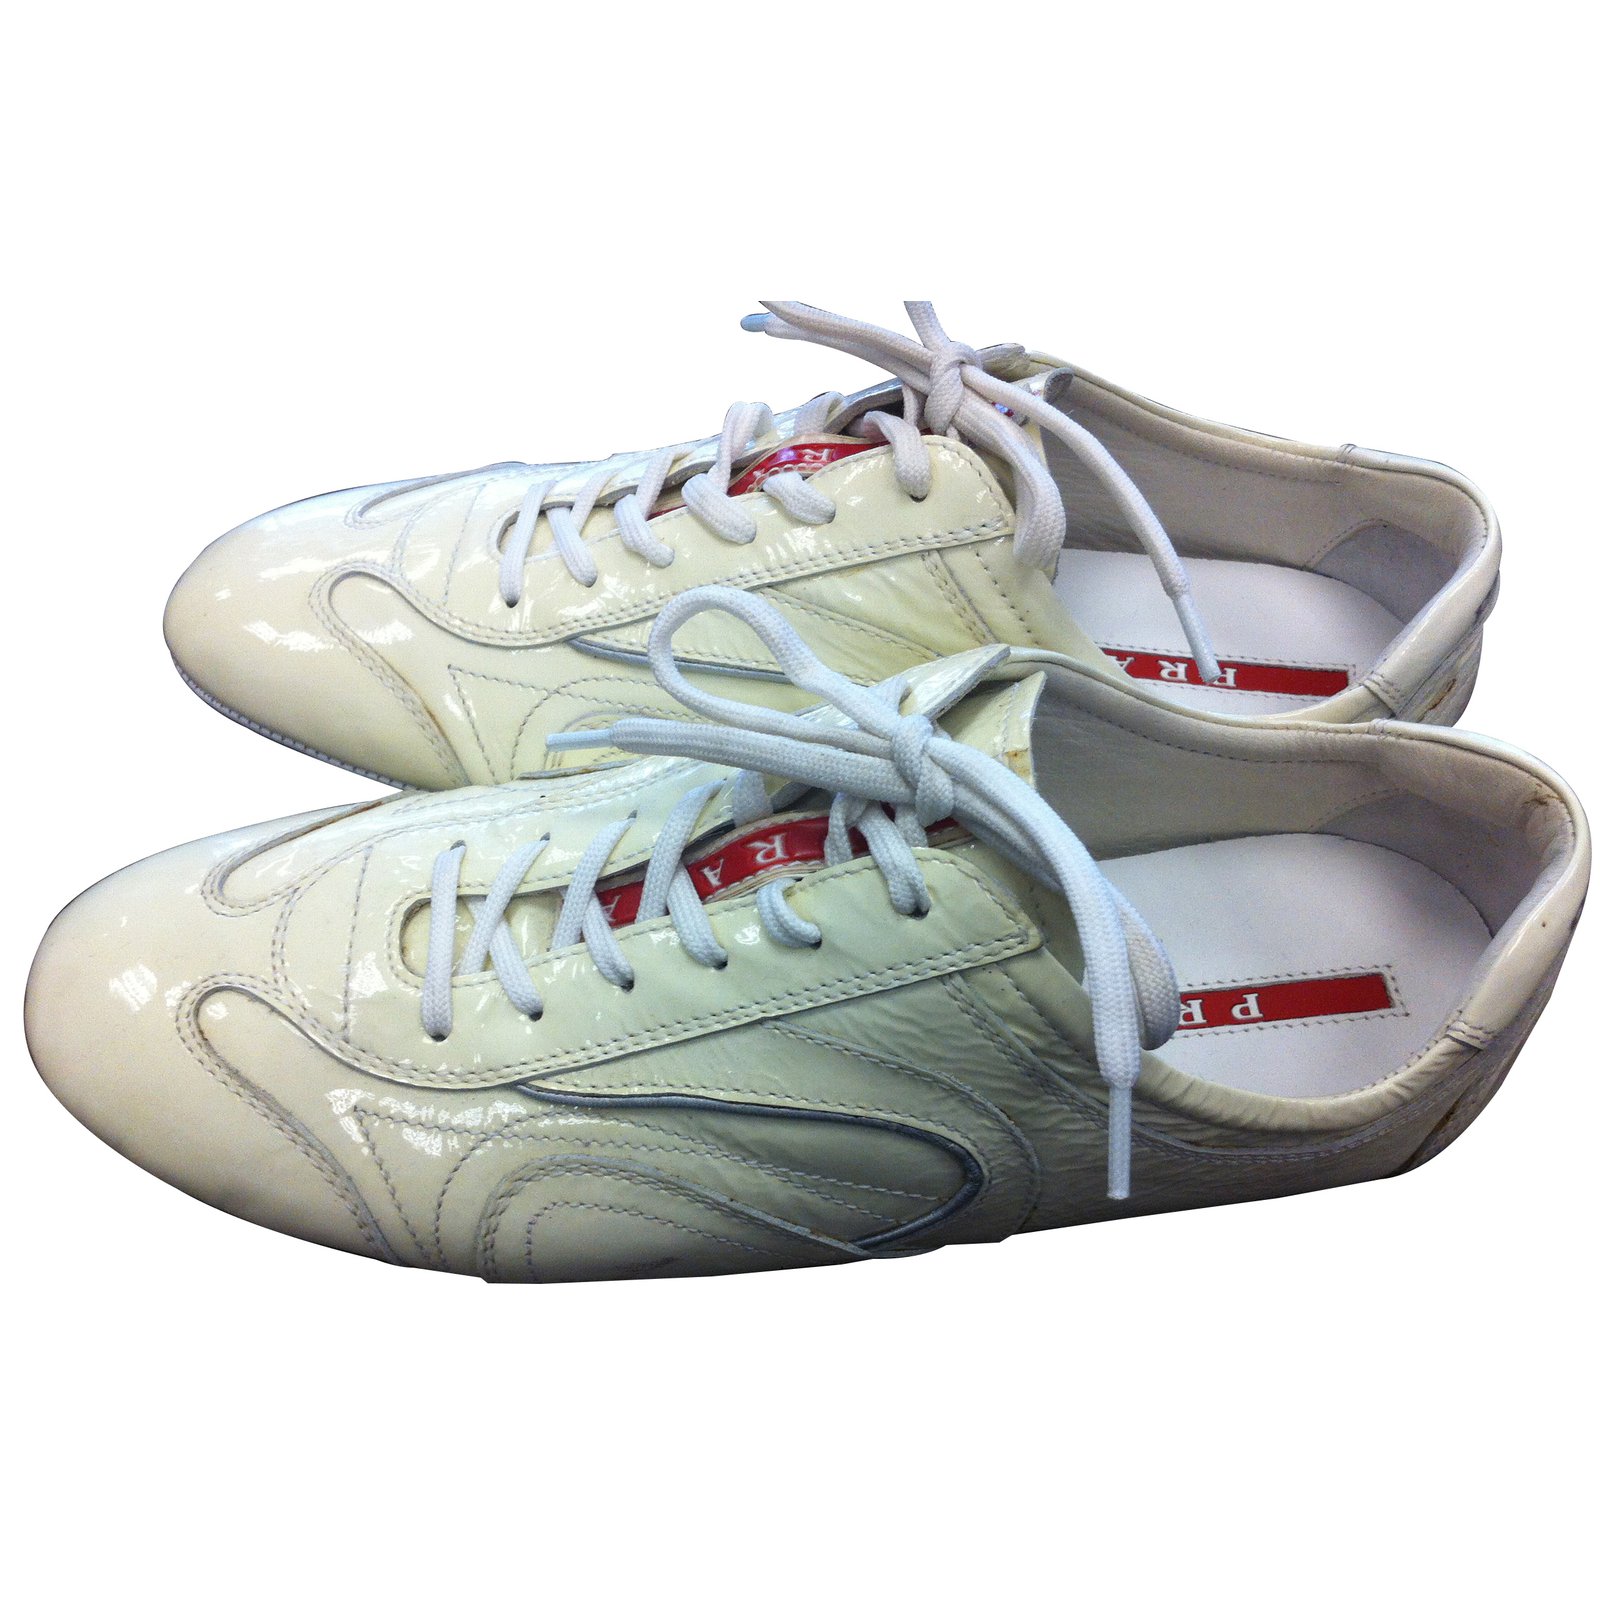 Prada Sneakers Cream Patent leather  - Joli Closet